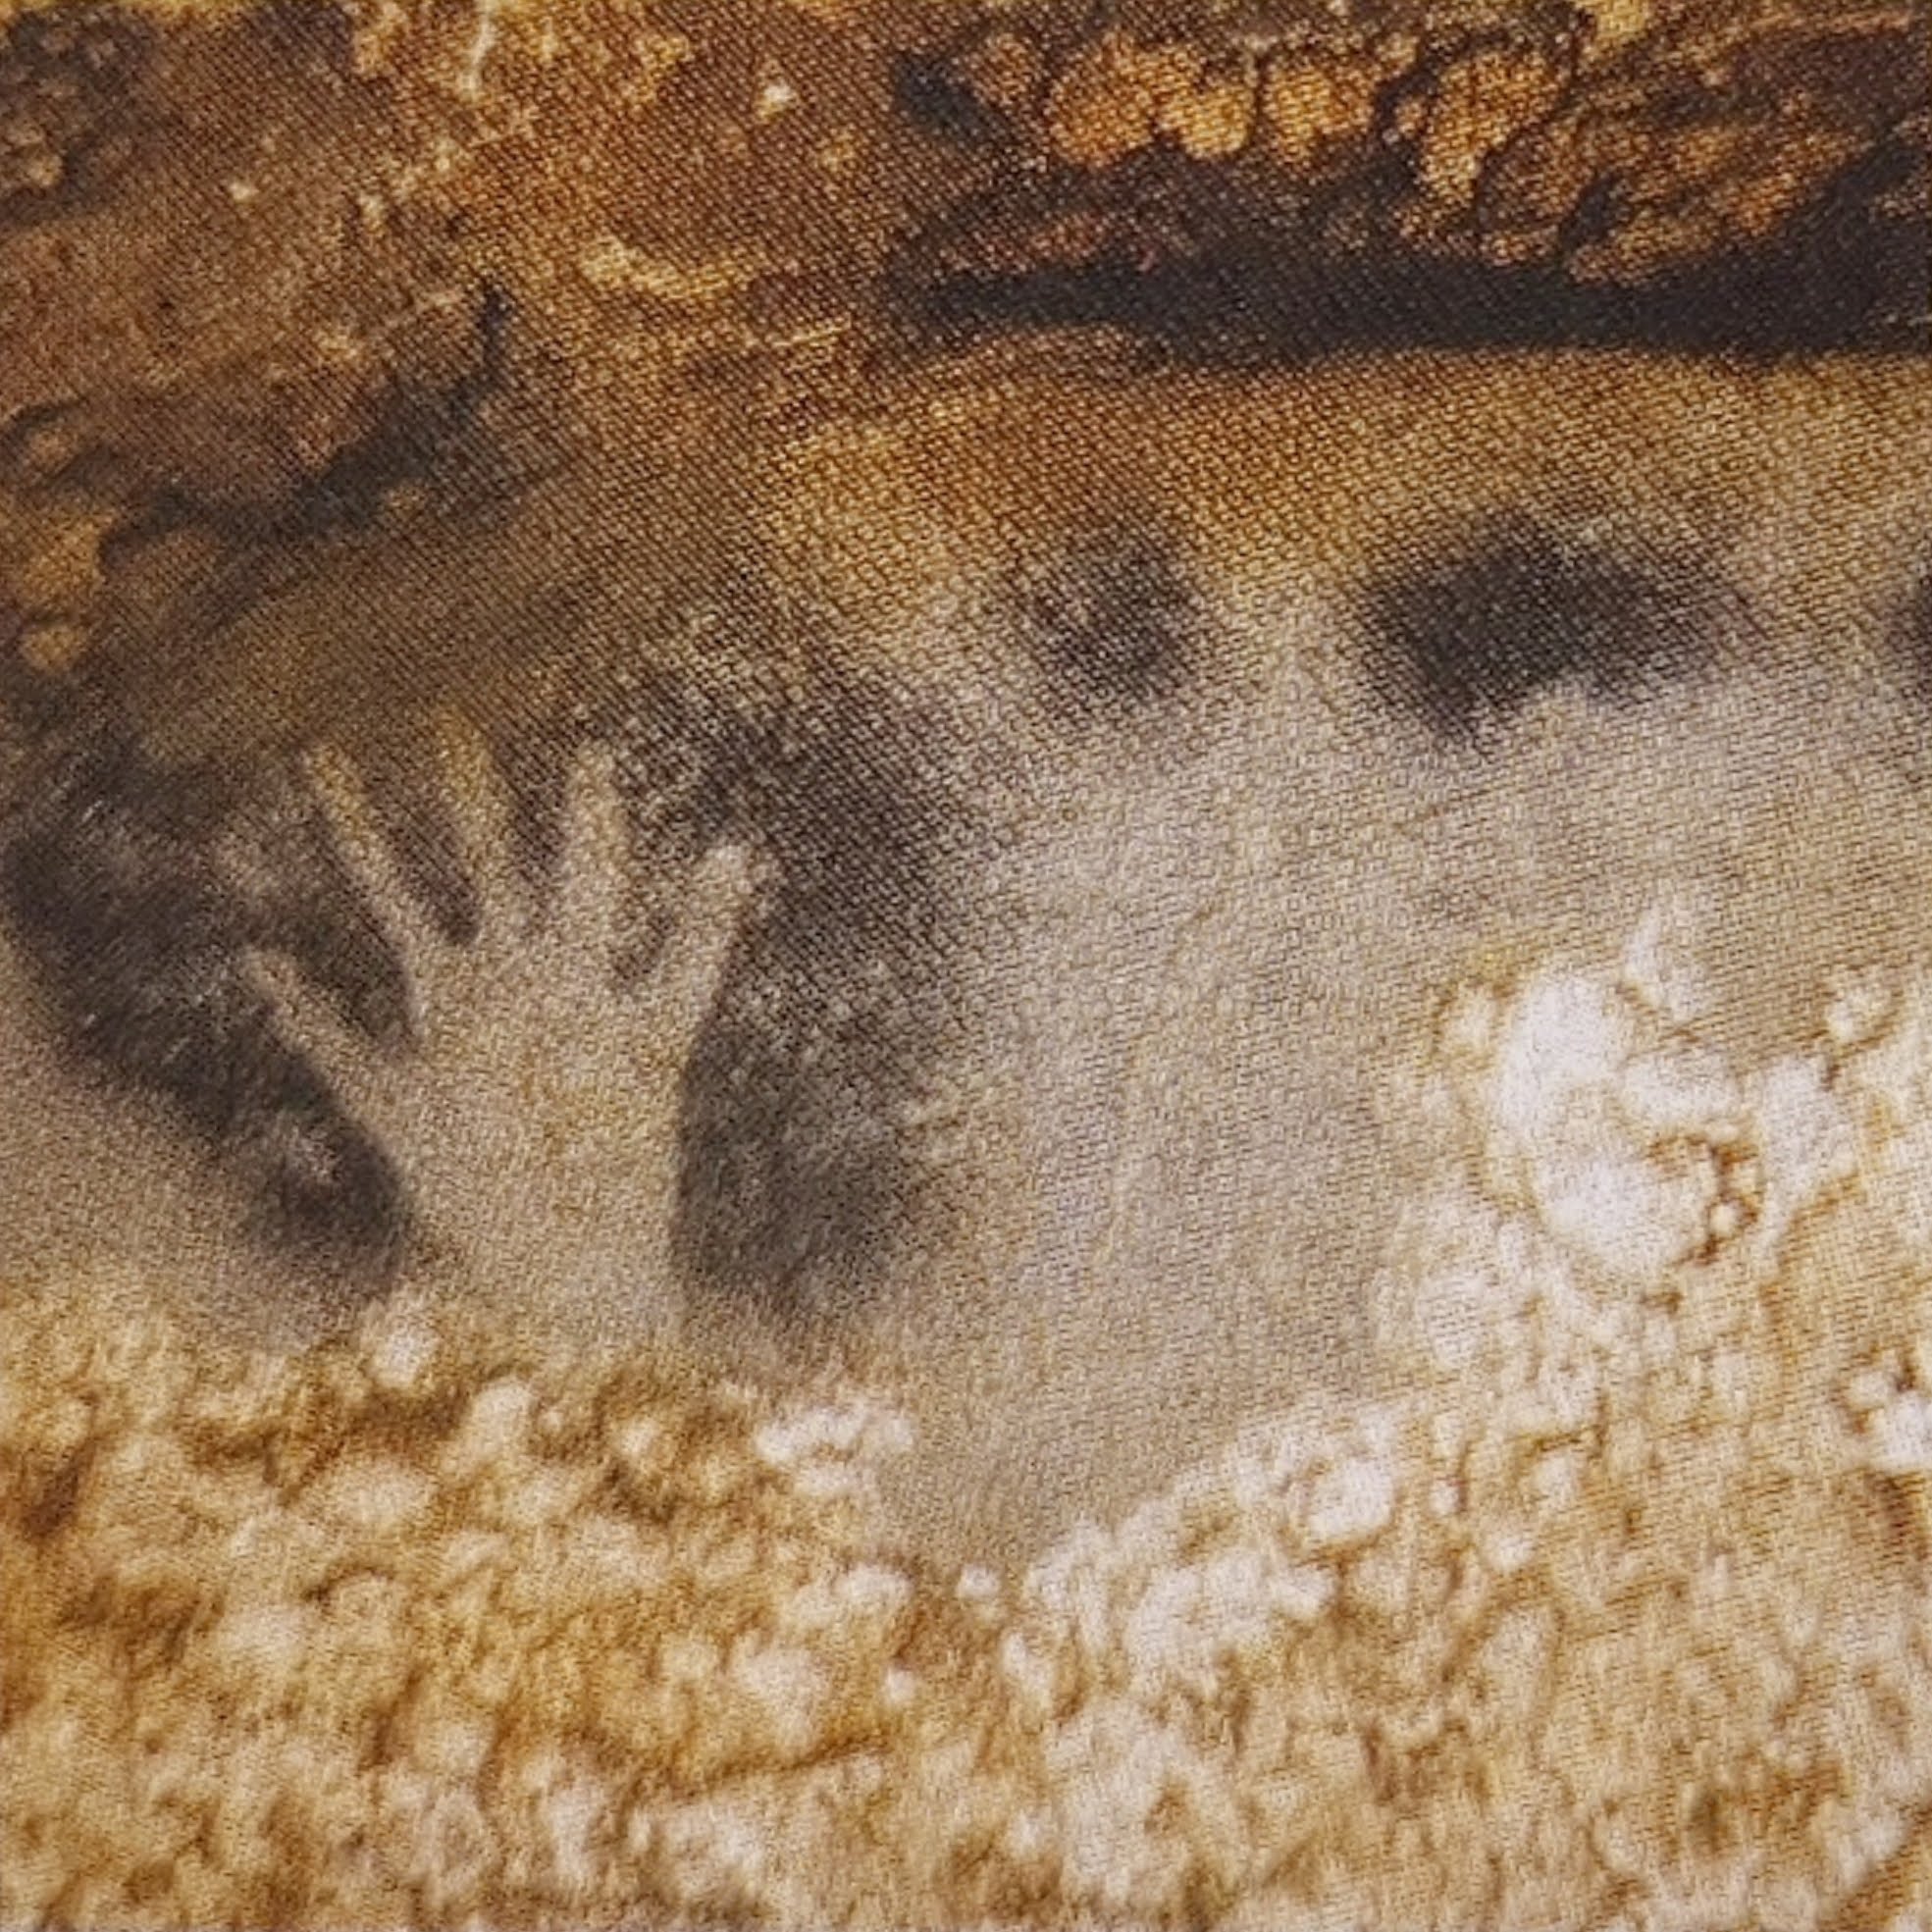 טביעת כף ידו של האדם הקדמון שלפני עשרות שנים צייר בעלי חיים על קירות מערת פש-מורל